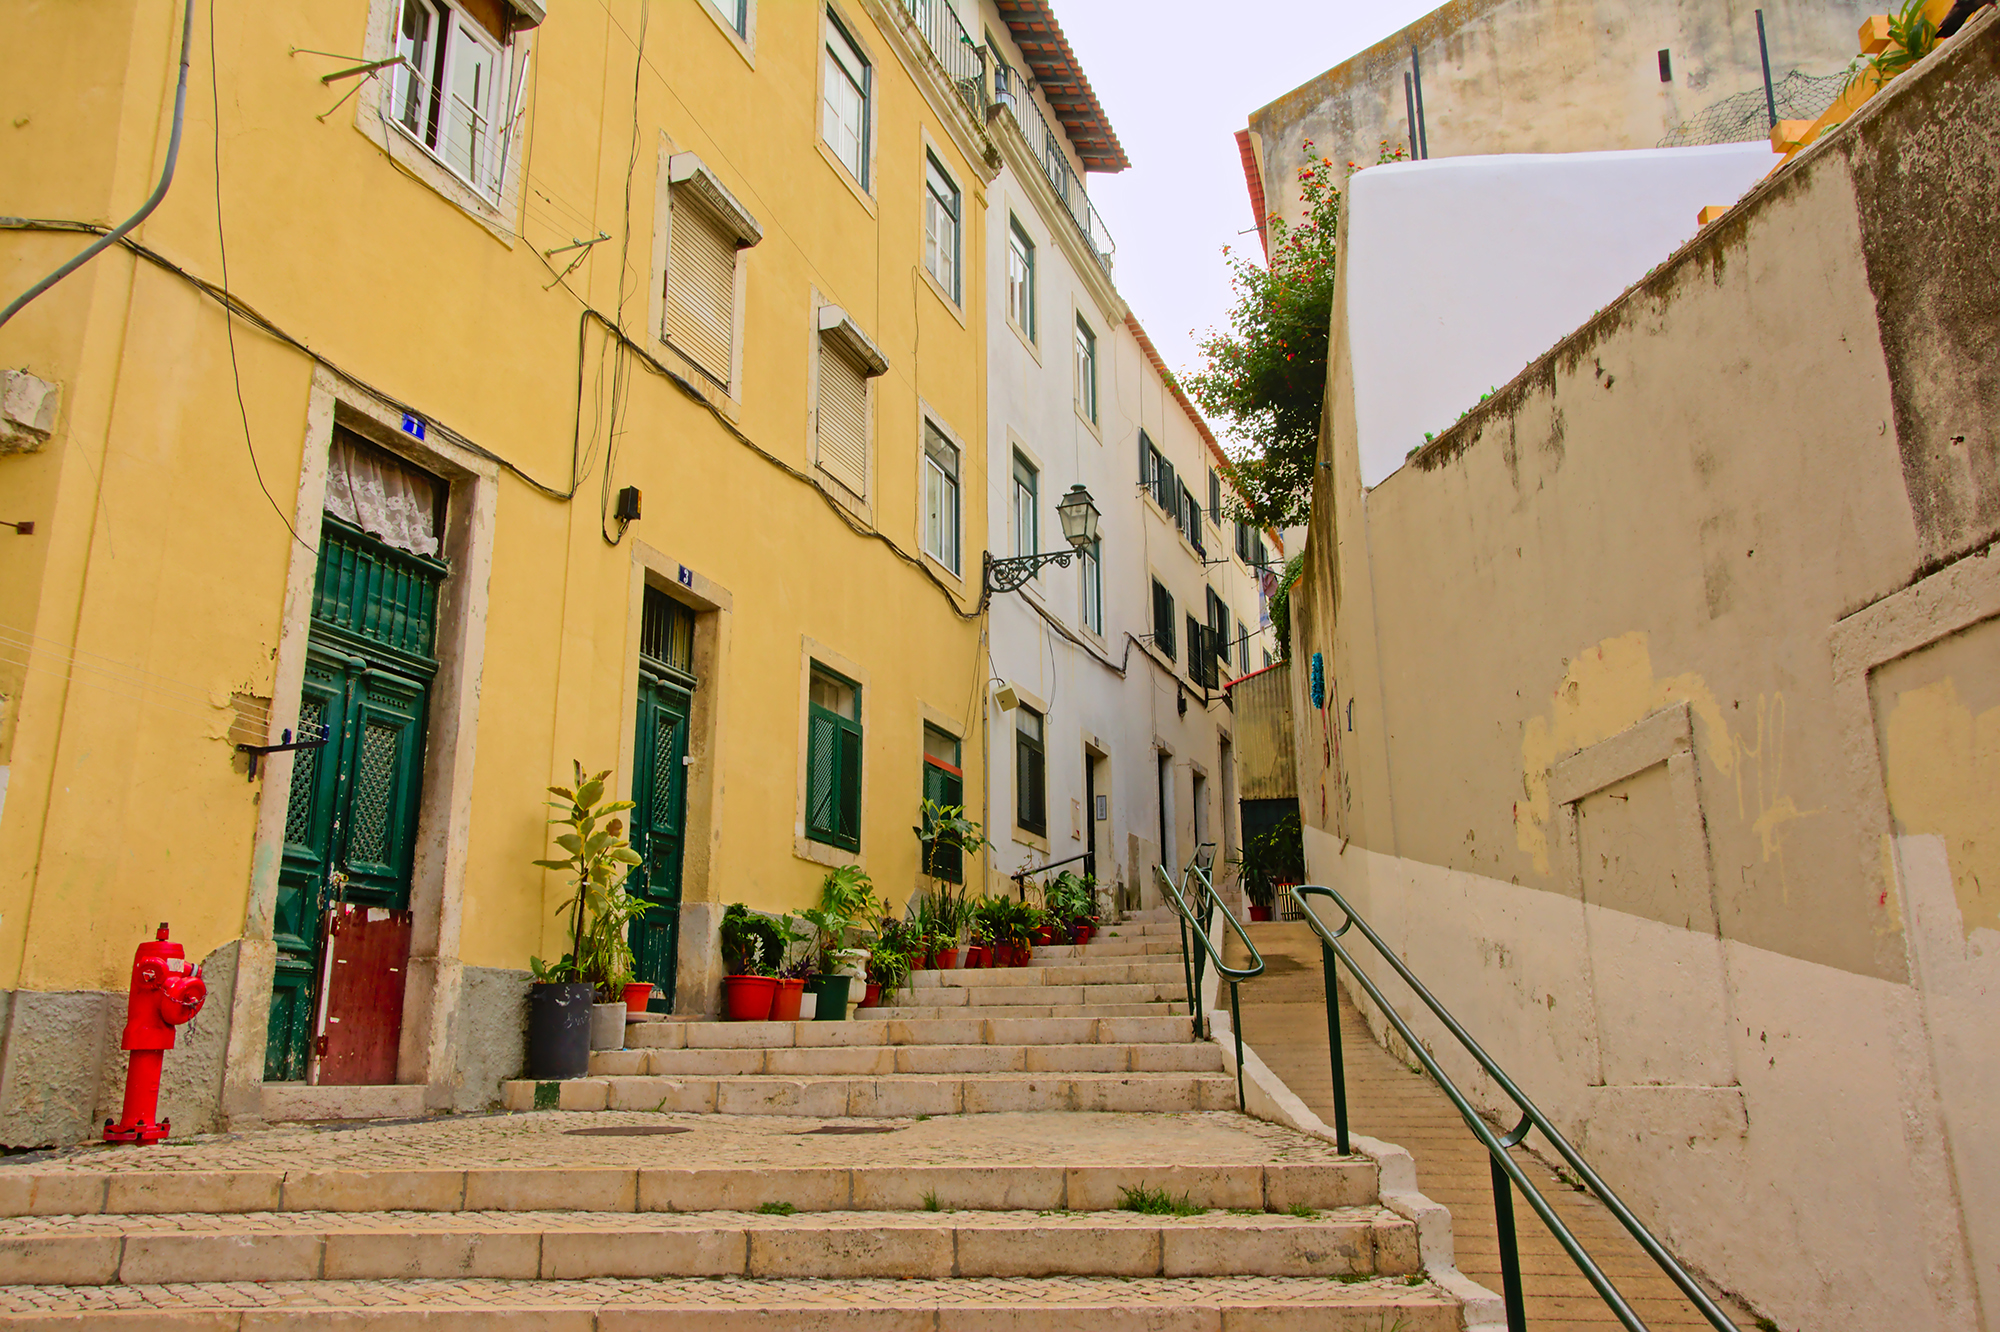 Alfama neighbourhood in Lisbon